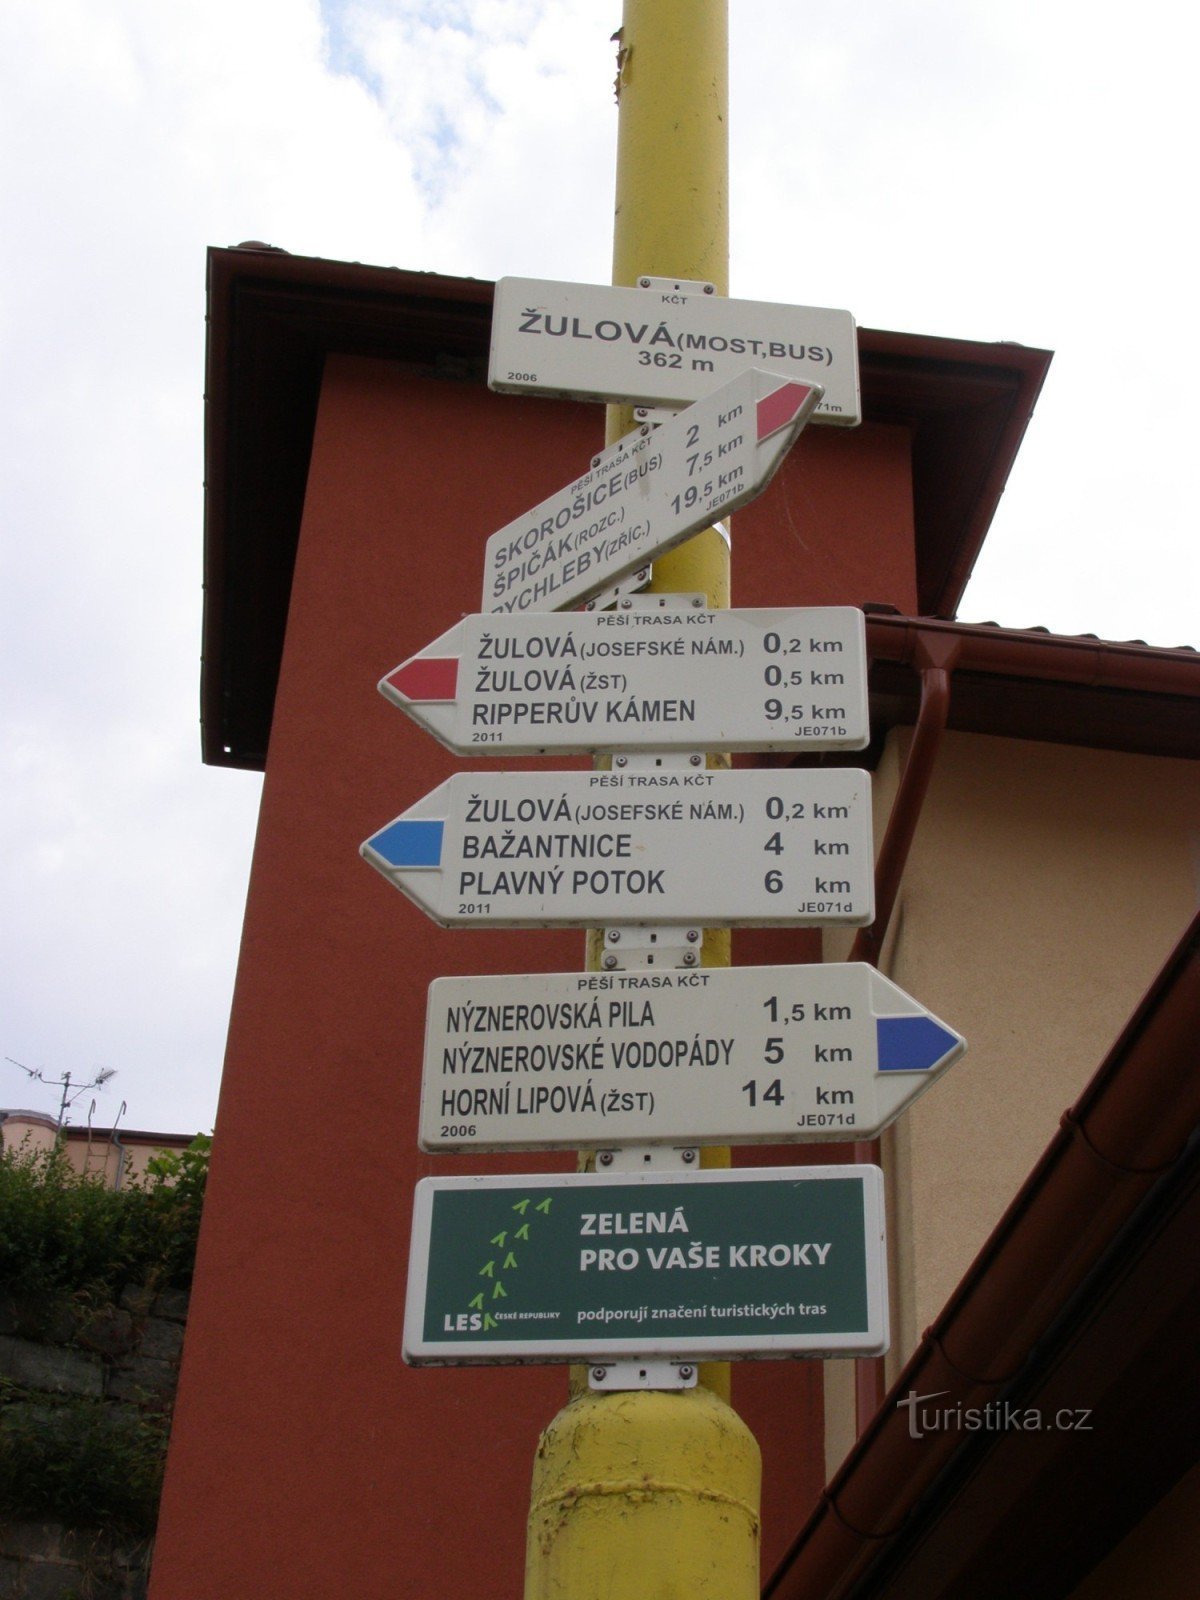 τουριστικό σταυροδρόμι Žulová - γέφυρα, λεωφορείο